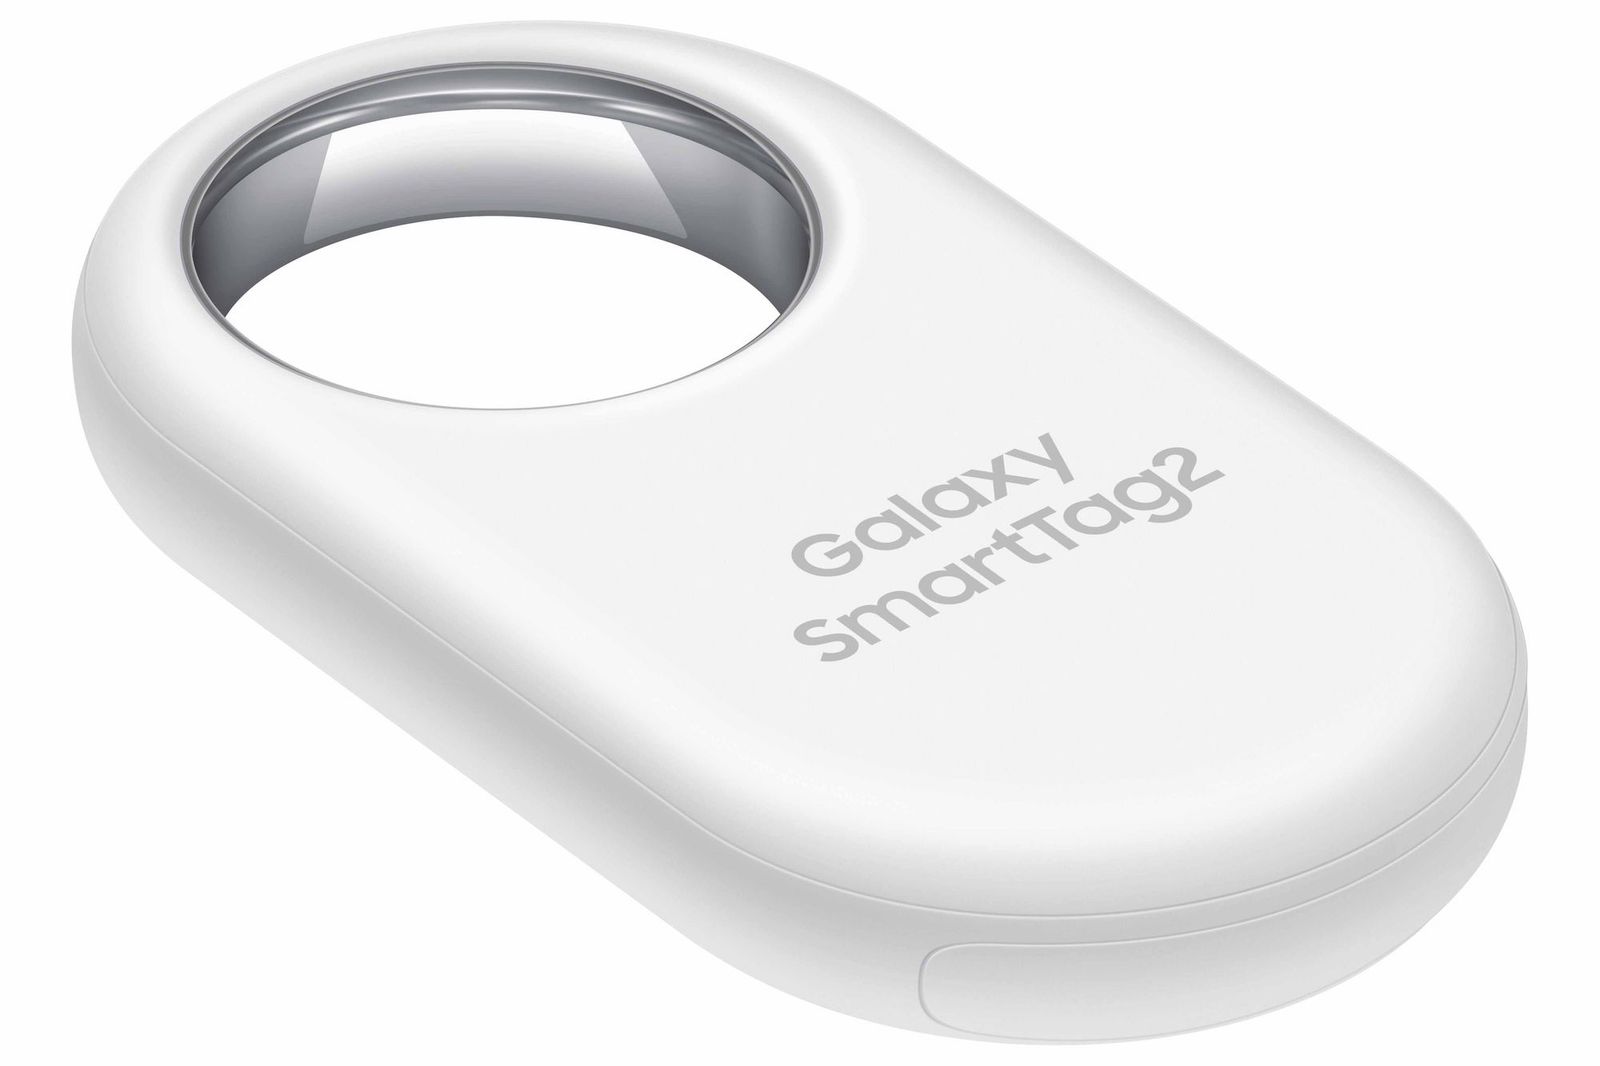 Nuevo Galaxy SmartTag2 de Samsung